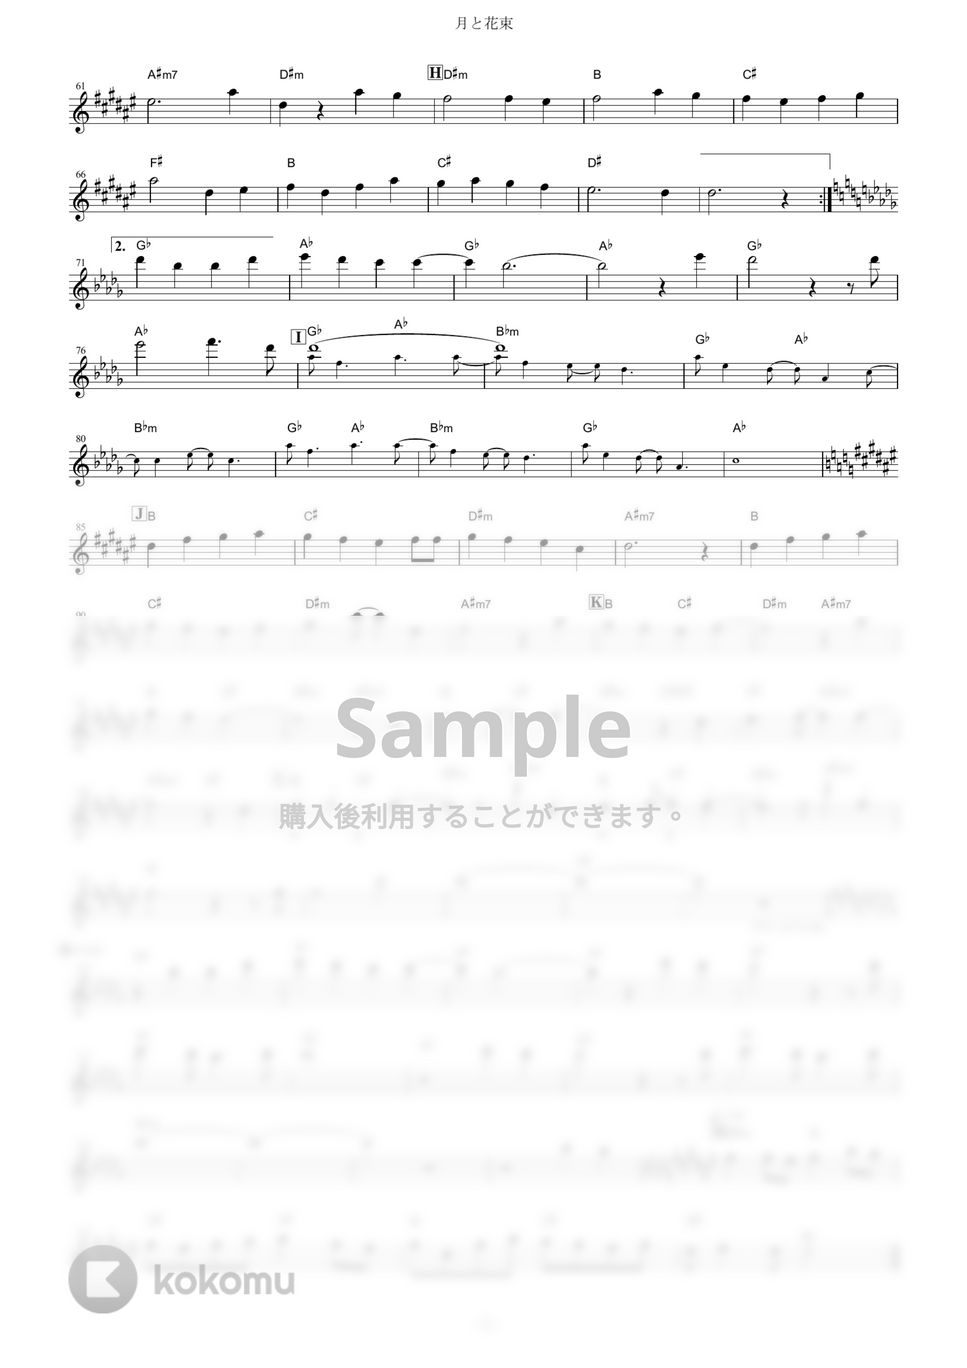 さユり - 月と花束 (『Fate/EXTRA Last Encore』 / in Bb) by muta-sax